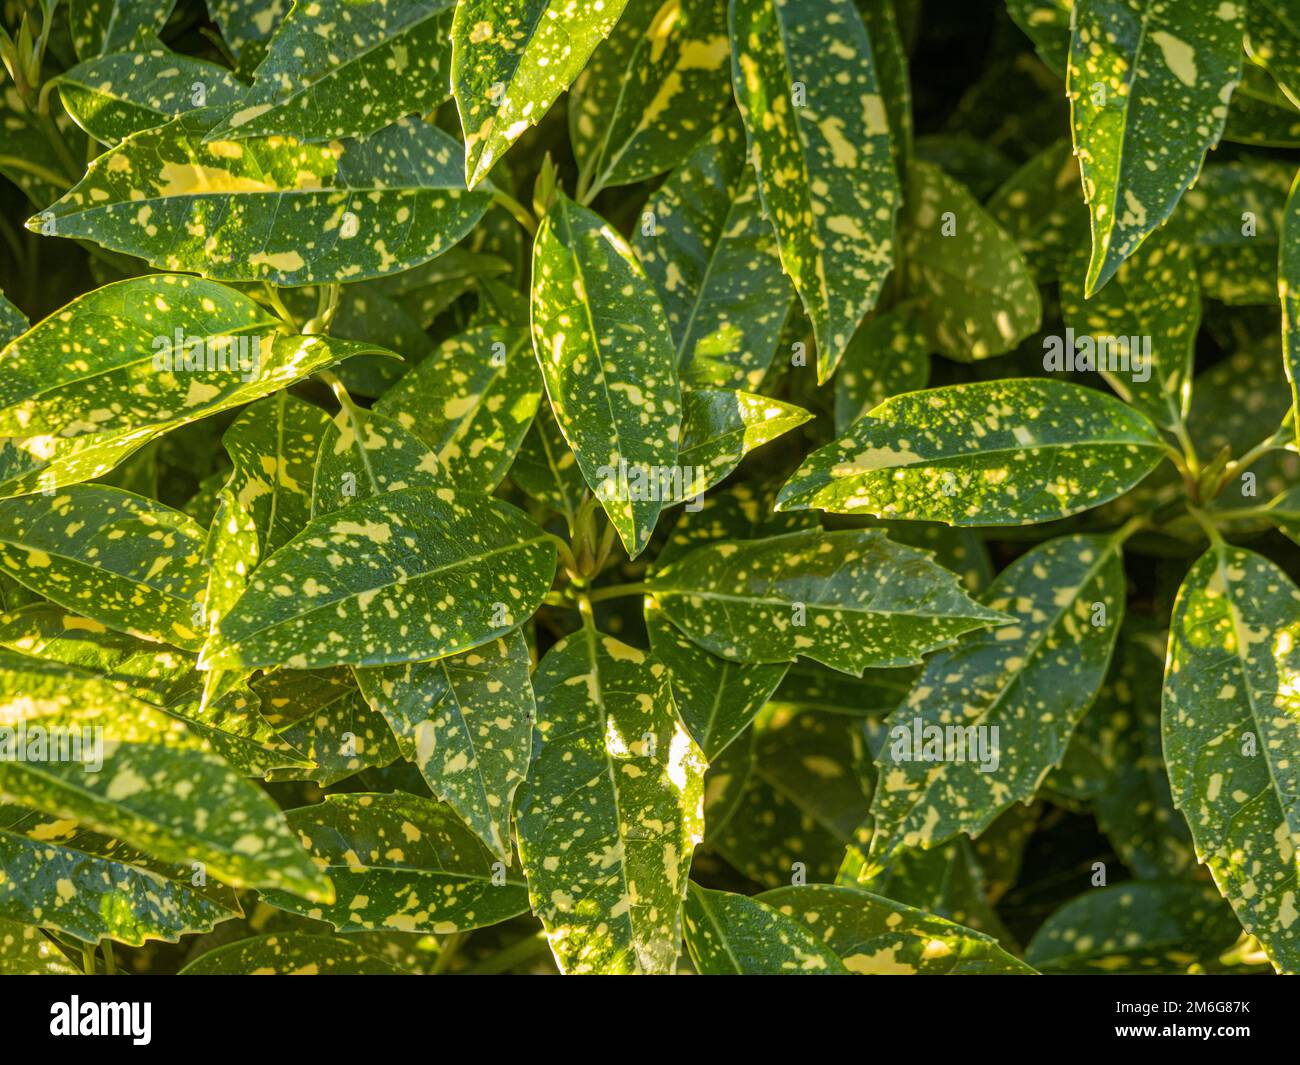 Le Laurier japonais 'Crotonifolia', communément appelé Laurel tacheté qui pousse dans un jardin britannique. Banque D'Images